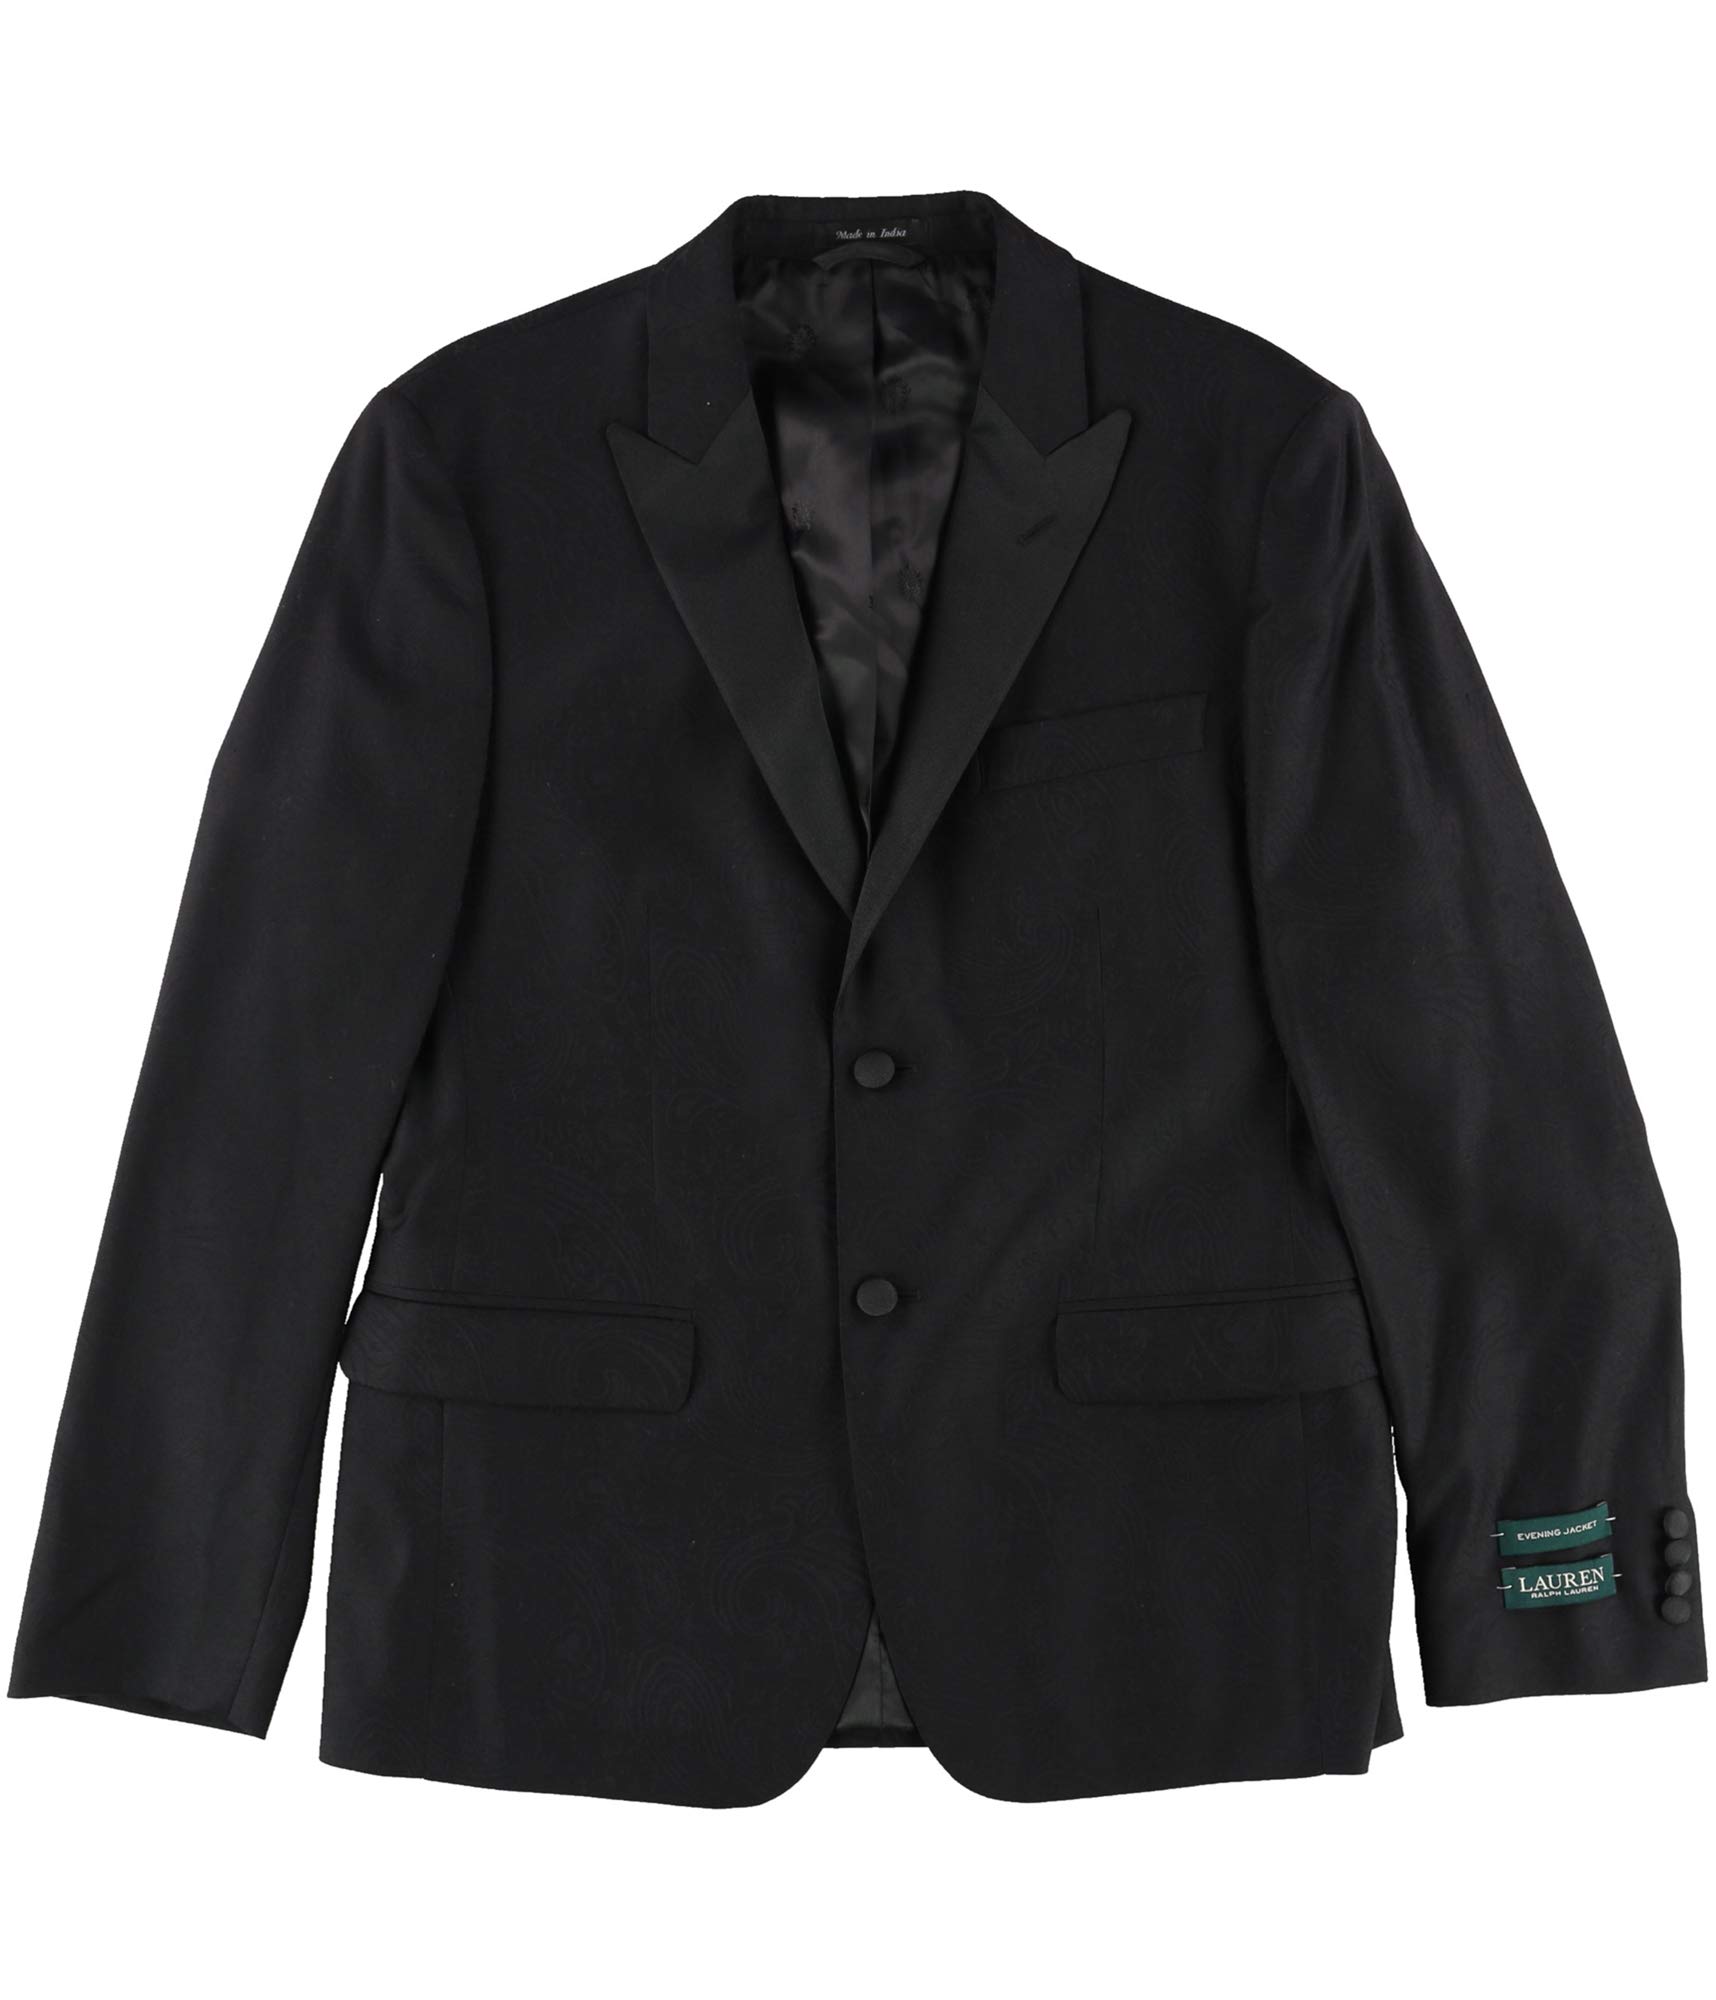 Ralph Lauren Mens Classic-Fit Black Paisley Two Button Blazer Jacket